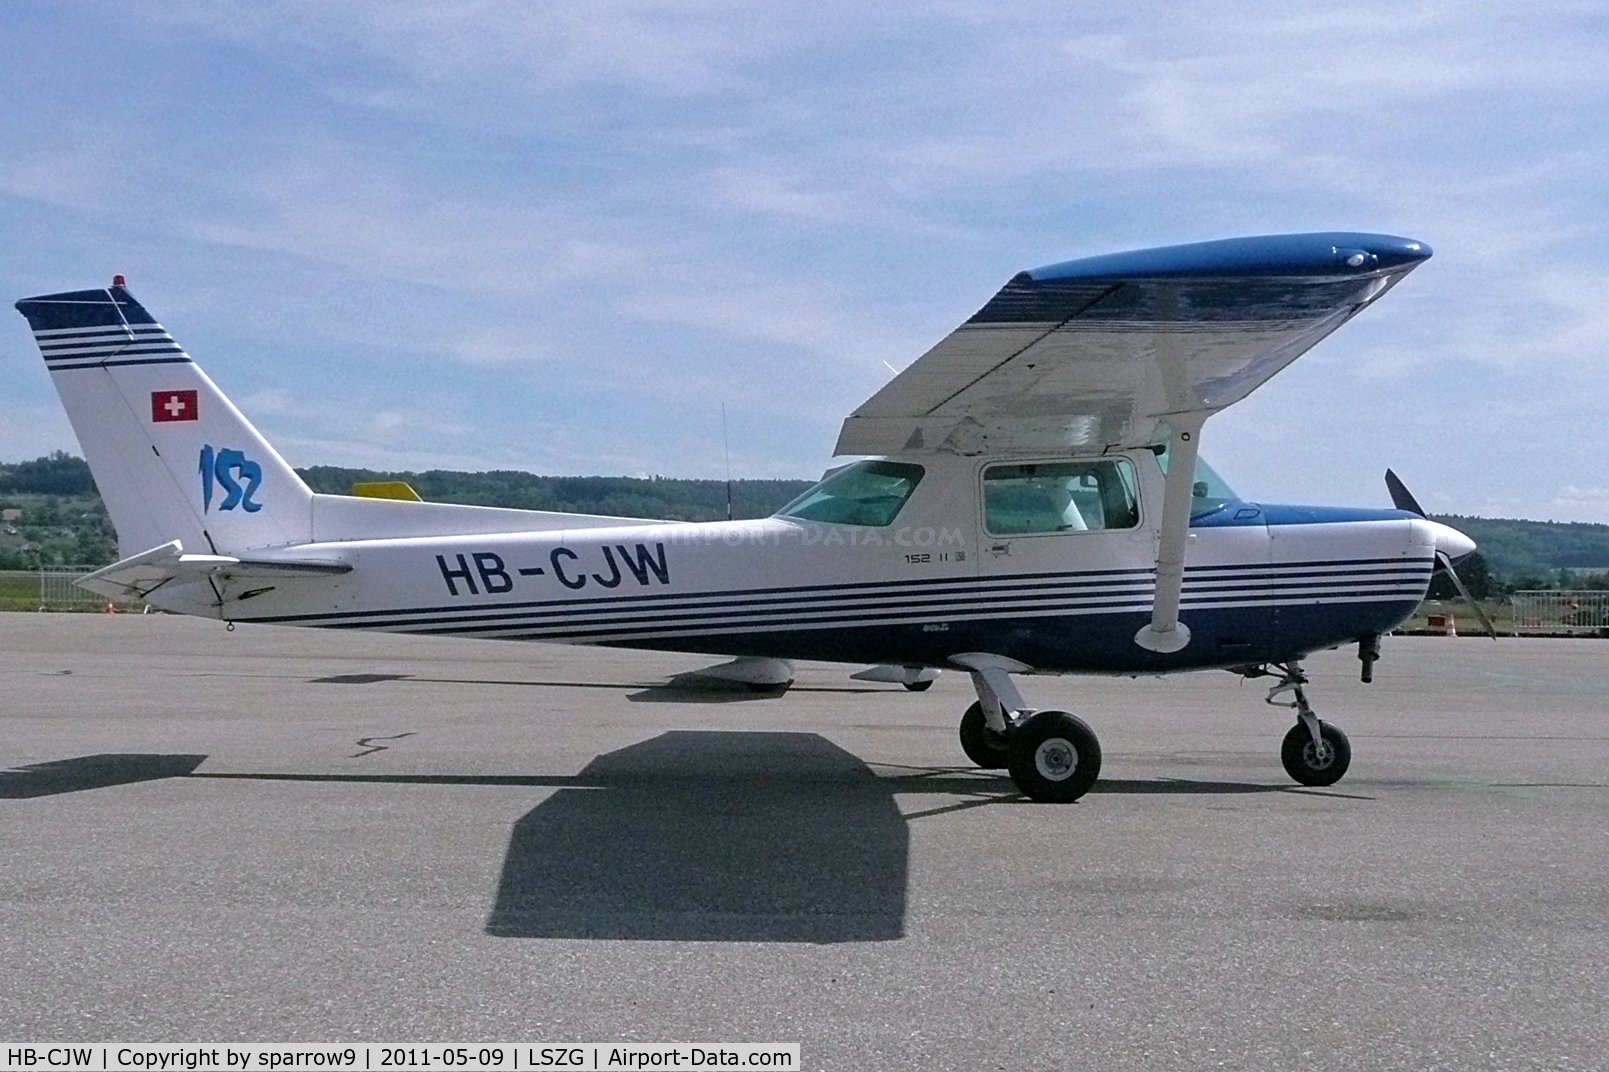 HB-CJW, 1979 Cessna 152 C/N 15283388, at rest